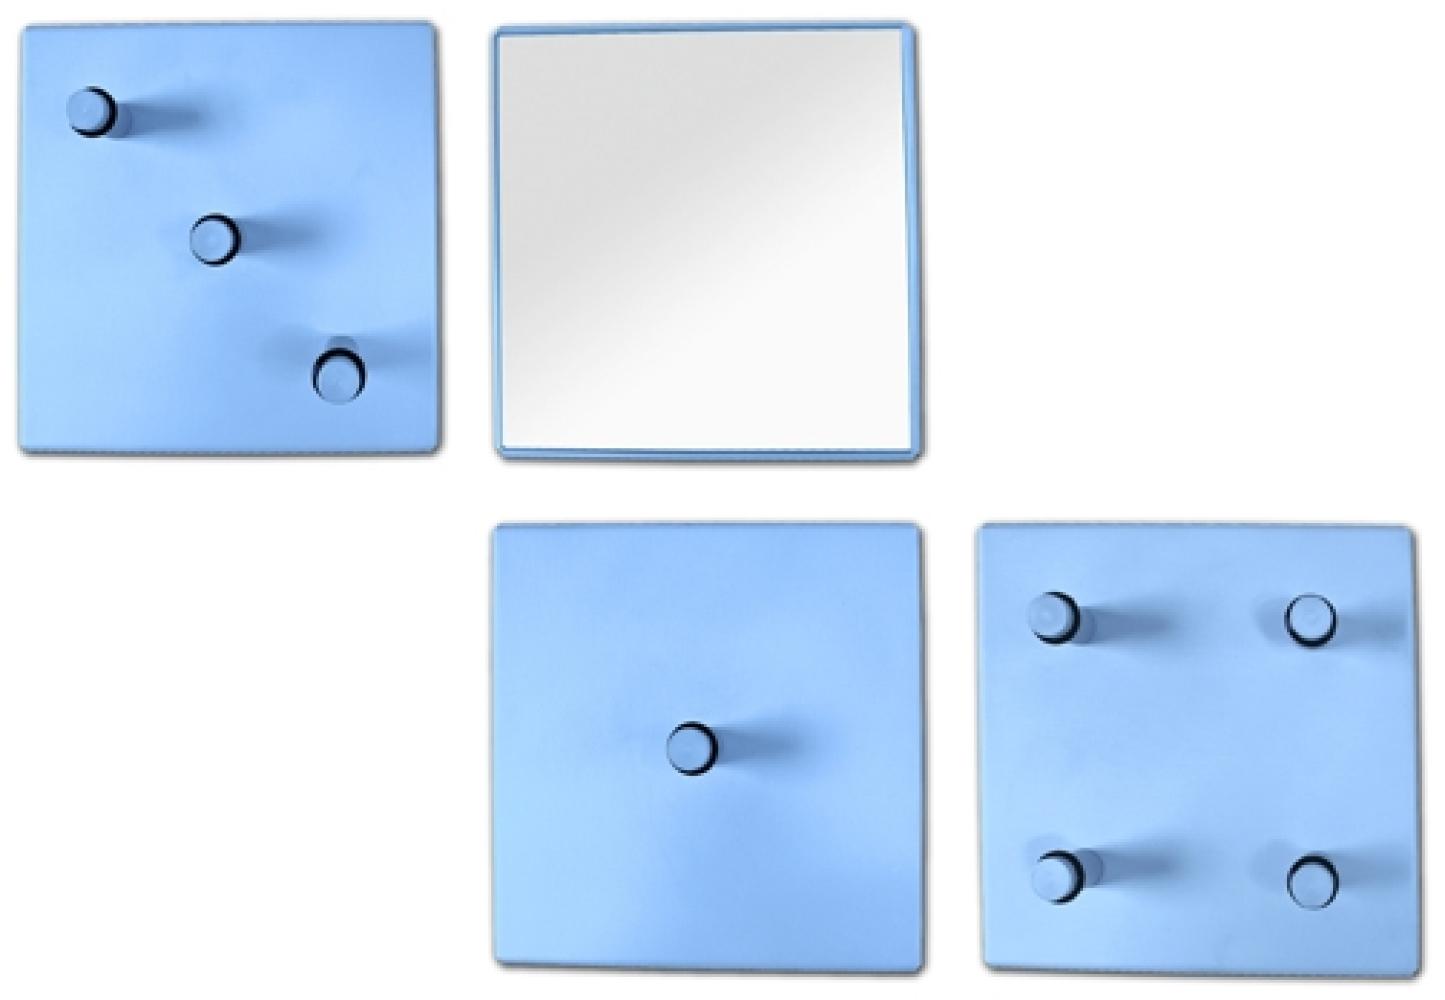 Garderobenhaken >Domino< in Blau aus Metall, Spiegelglas - 15x15x6cm (BxHxT) Bild 1